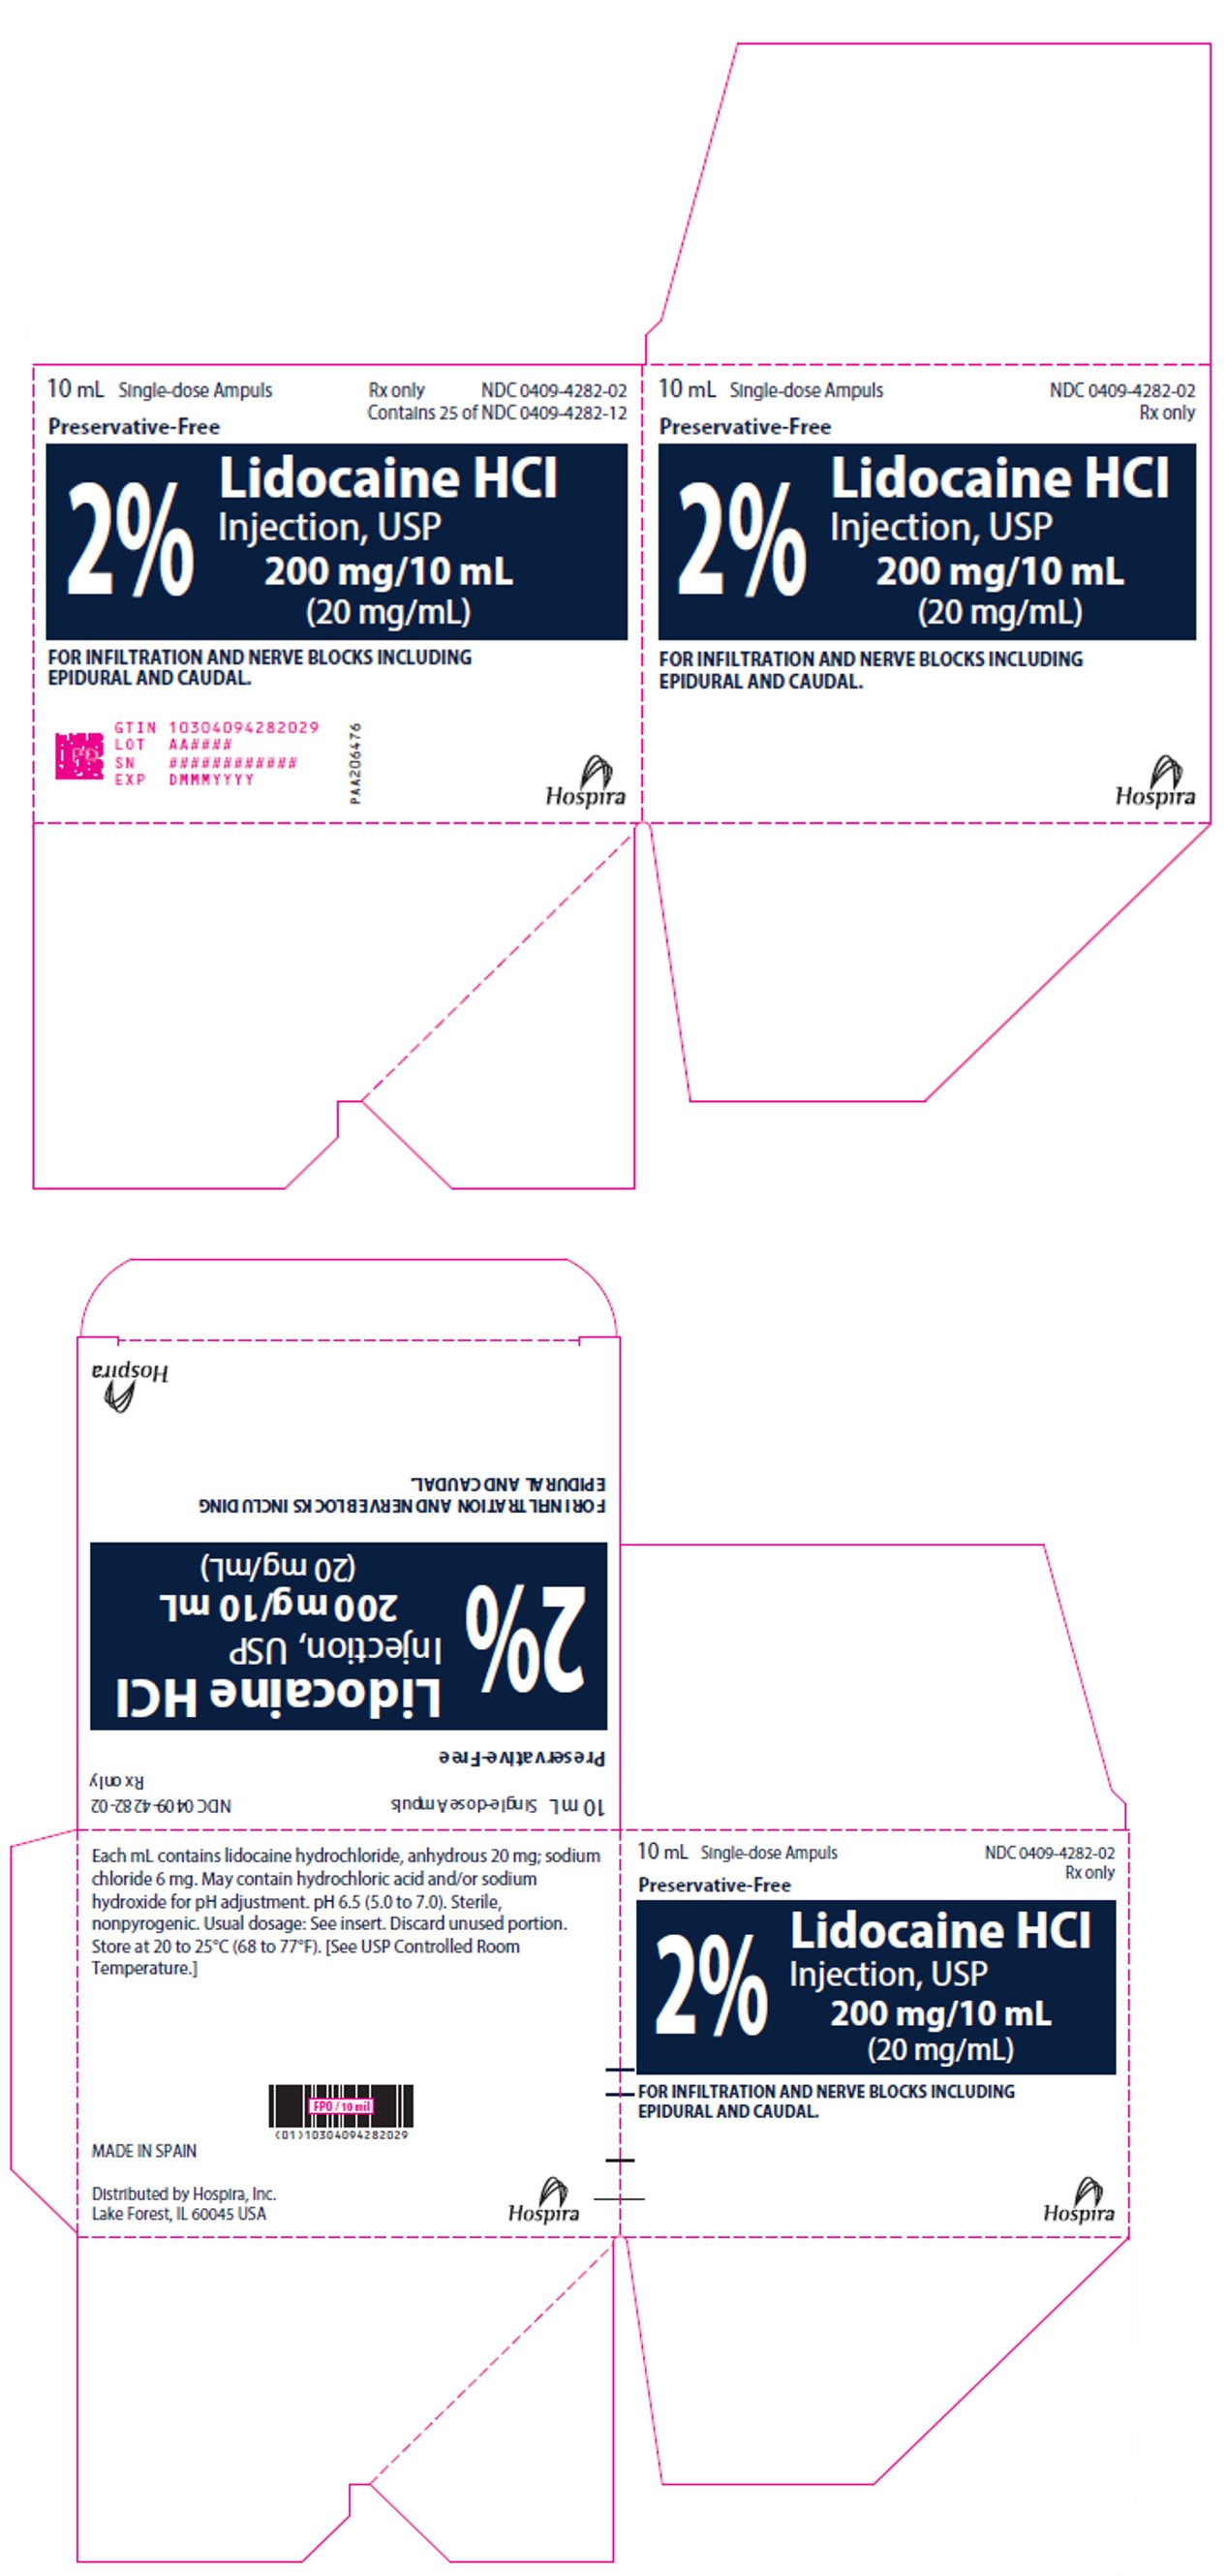 PRINCIPAL DISPLAY PANEL - 10 mL Ampule Carton